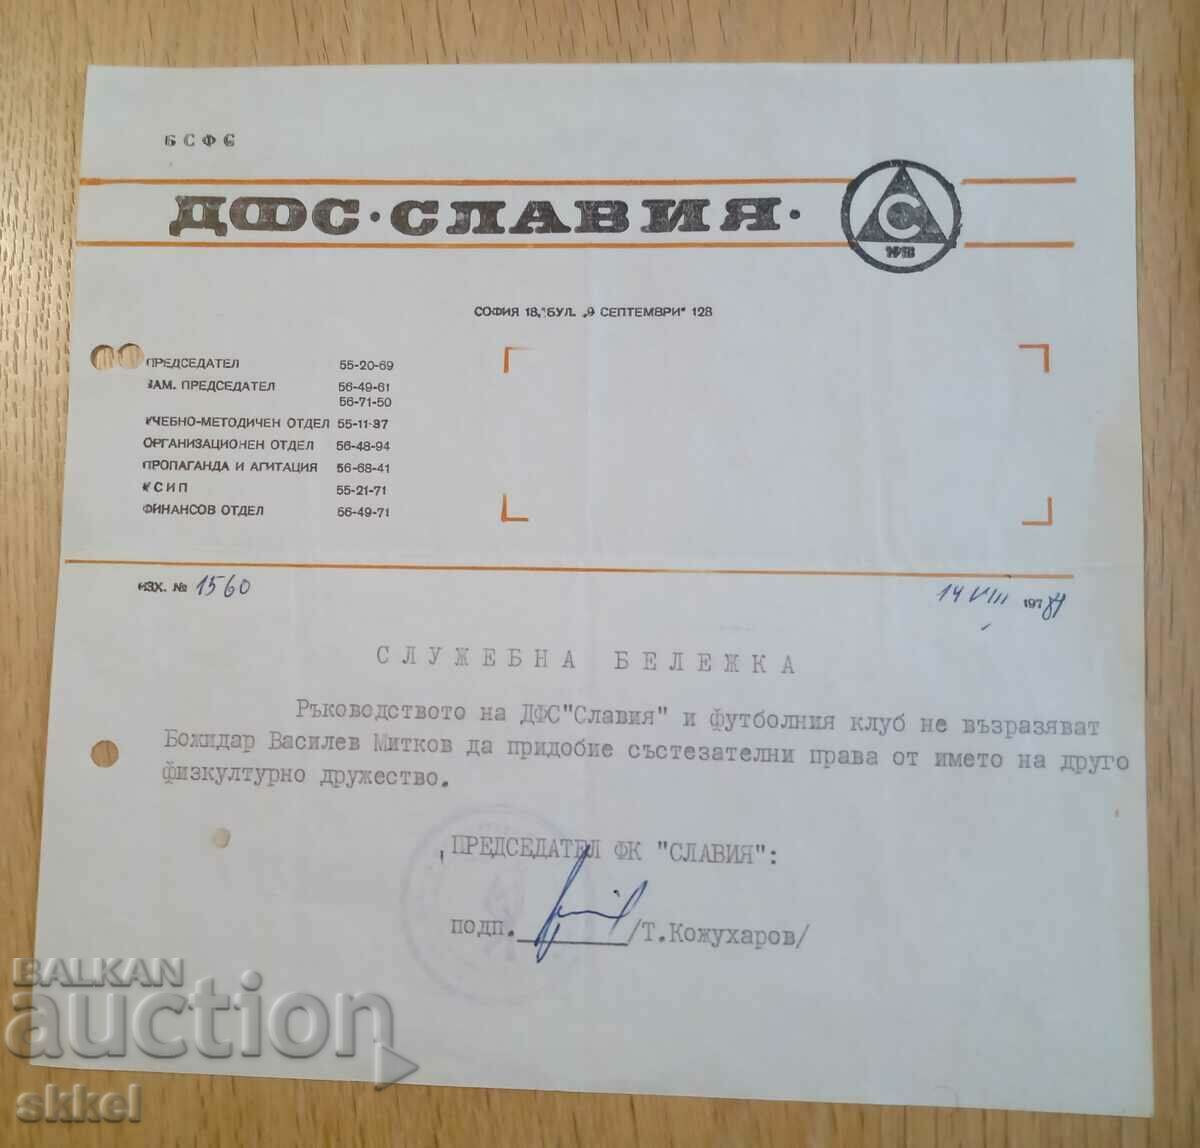 Επίσημο έγγραφο ποδοσφαίρου υπογεγραμμένο από τον πρόεδρο Slavia 1989